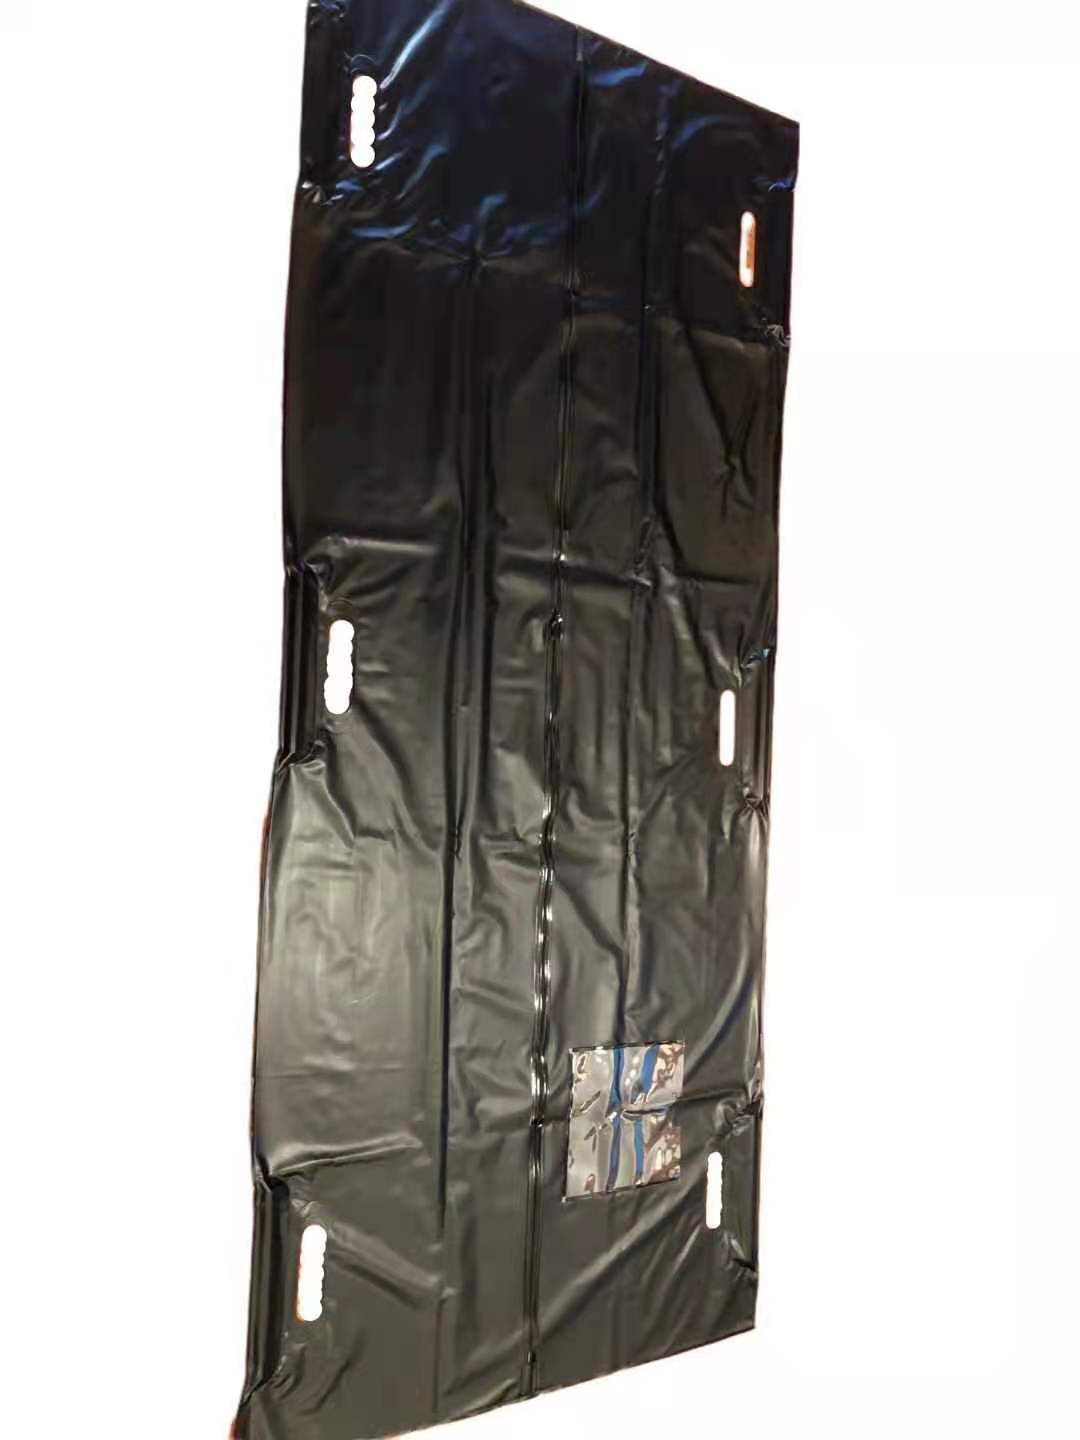 Túi đựng xác chết bằng nhựa PVC dành cho xác chết